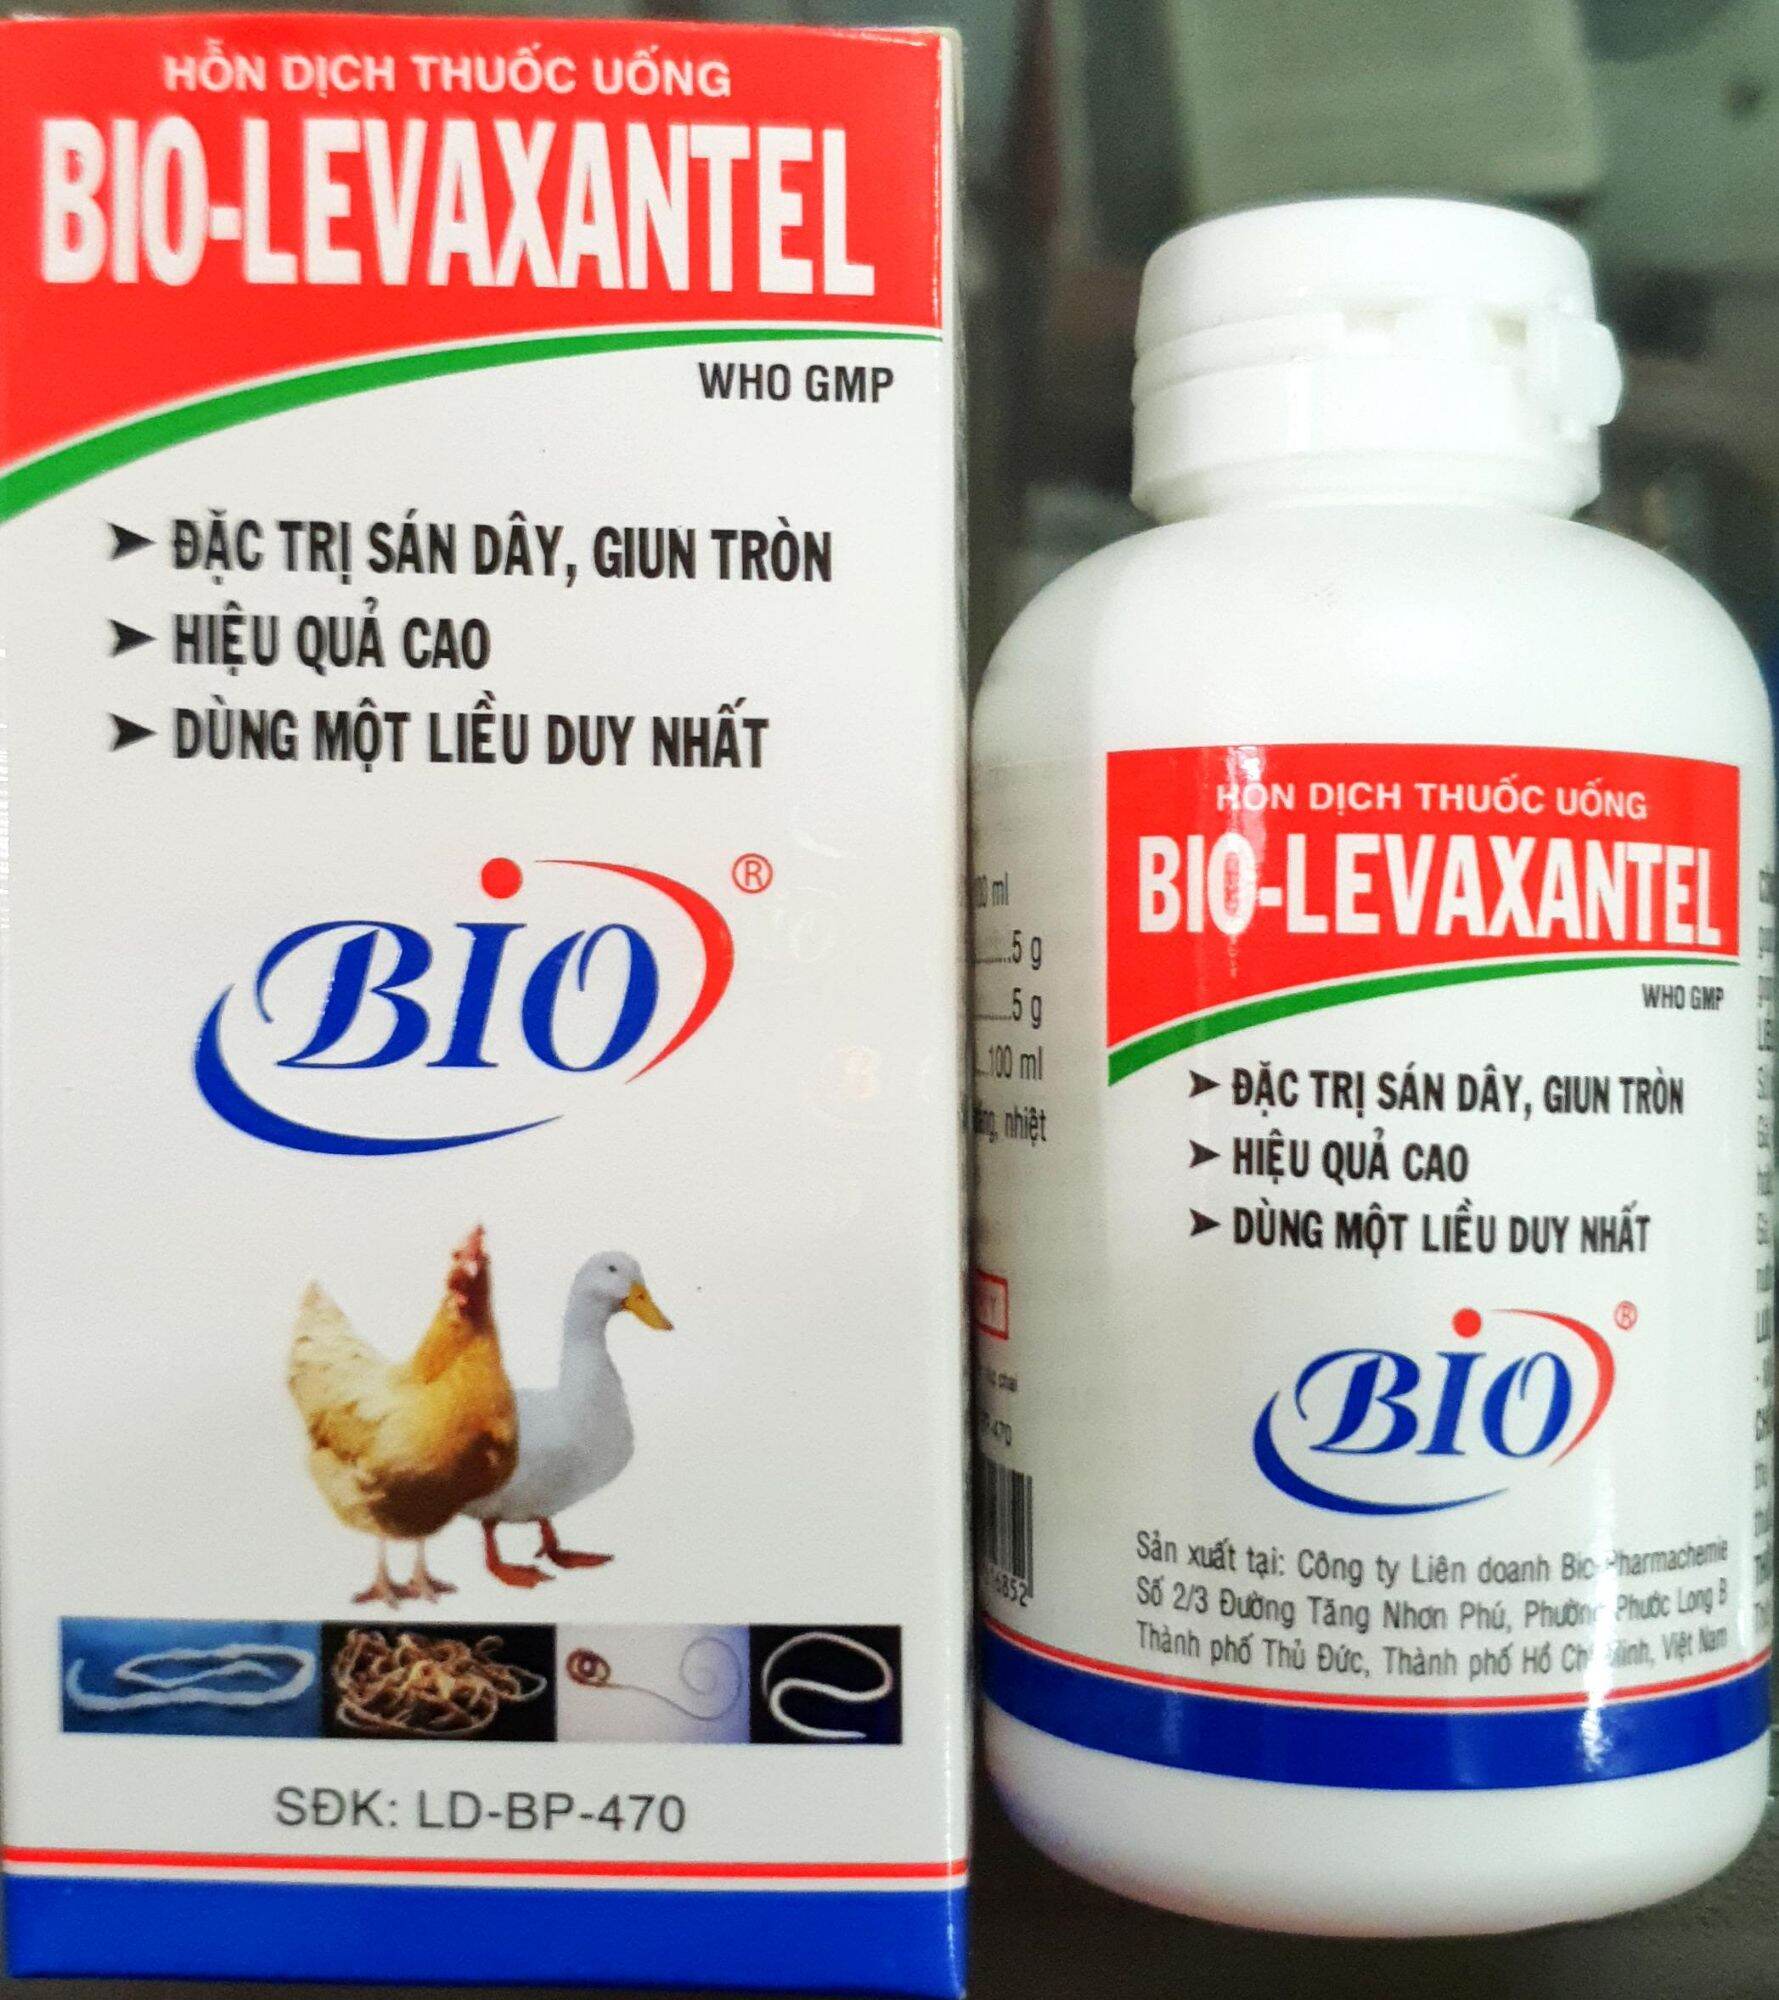 Bio Levaxantel (60ml) - Dung dịch uống xổ giun sán thế hệ mới cho gà đá. An toàn, hiệu quả và kinh tế